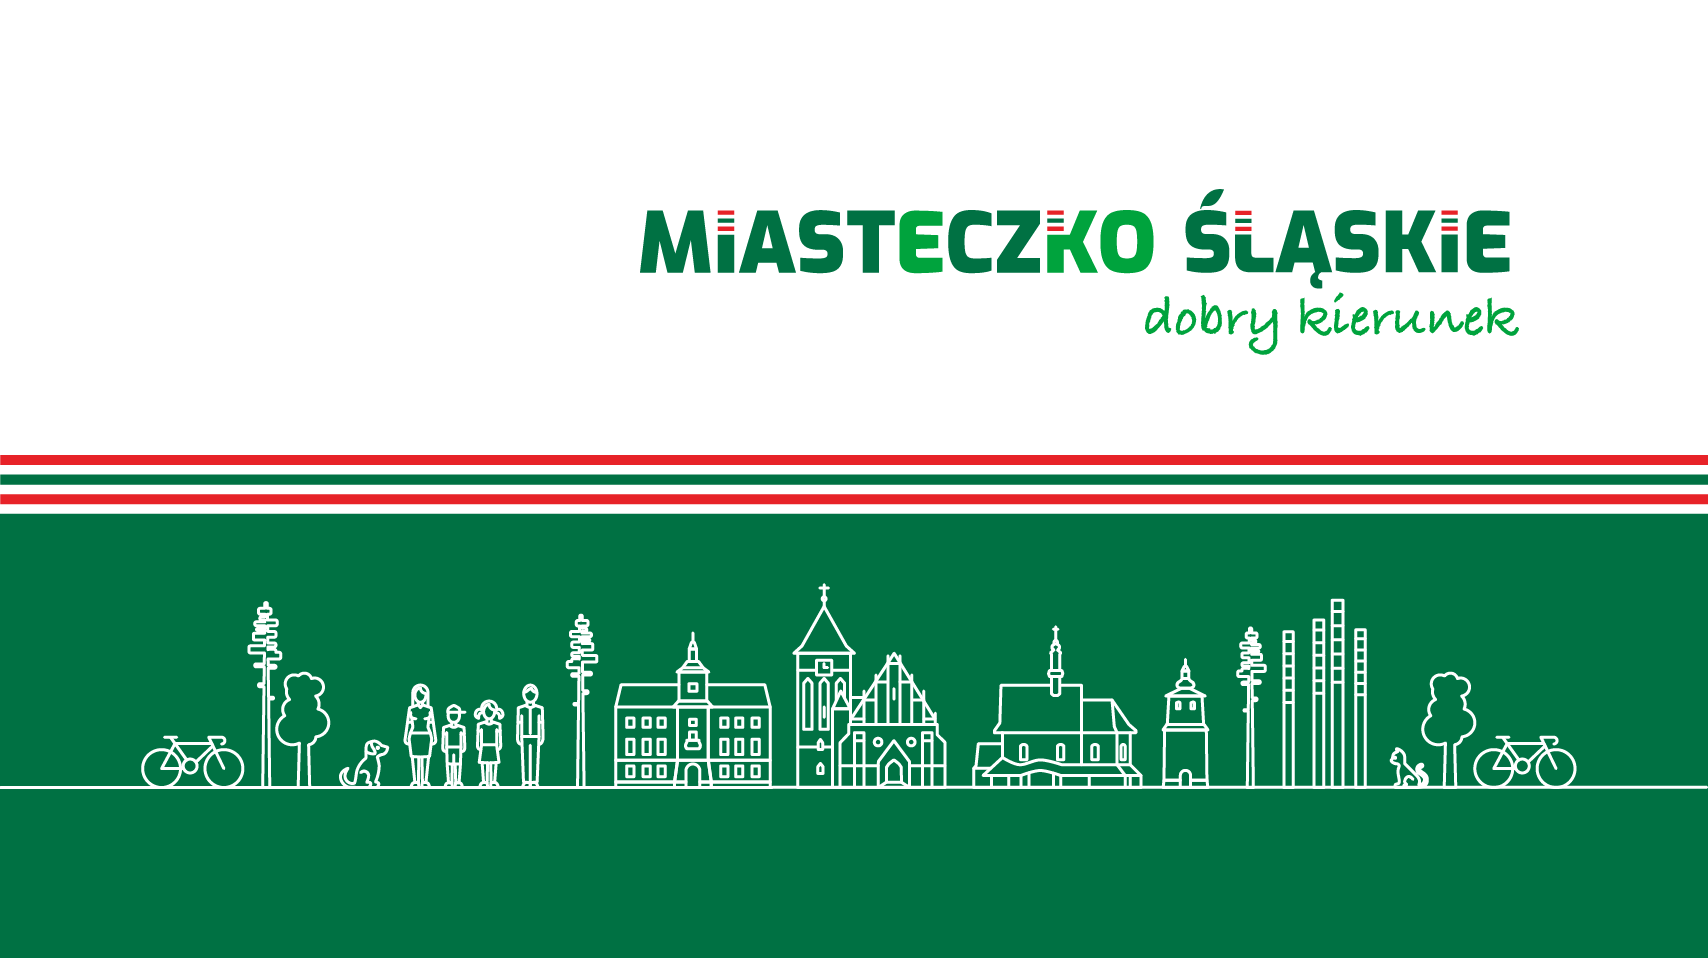 Zarządzenie nr 908/21 Burmistrza Miasta Miasteczko Śląskie